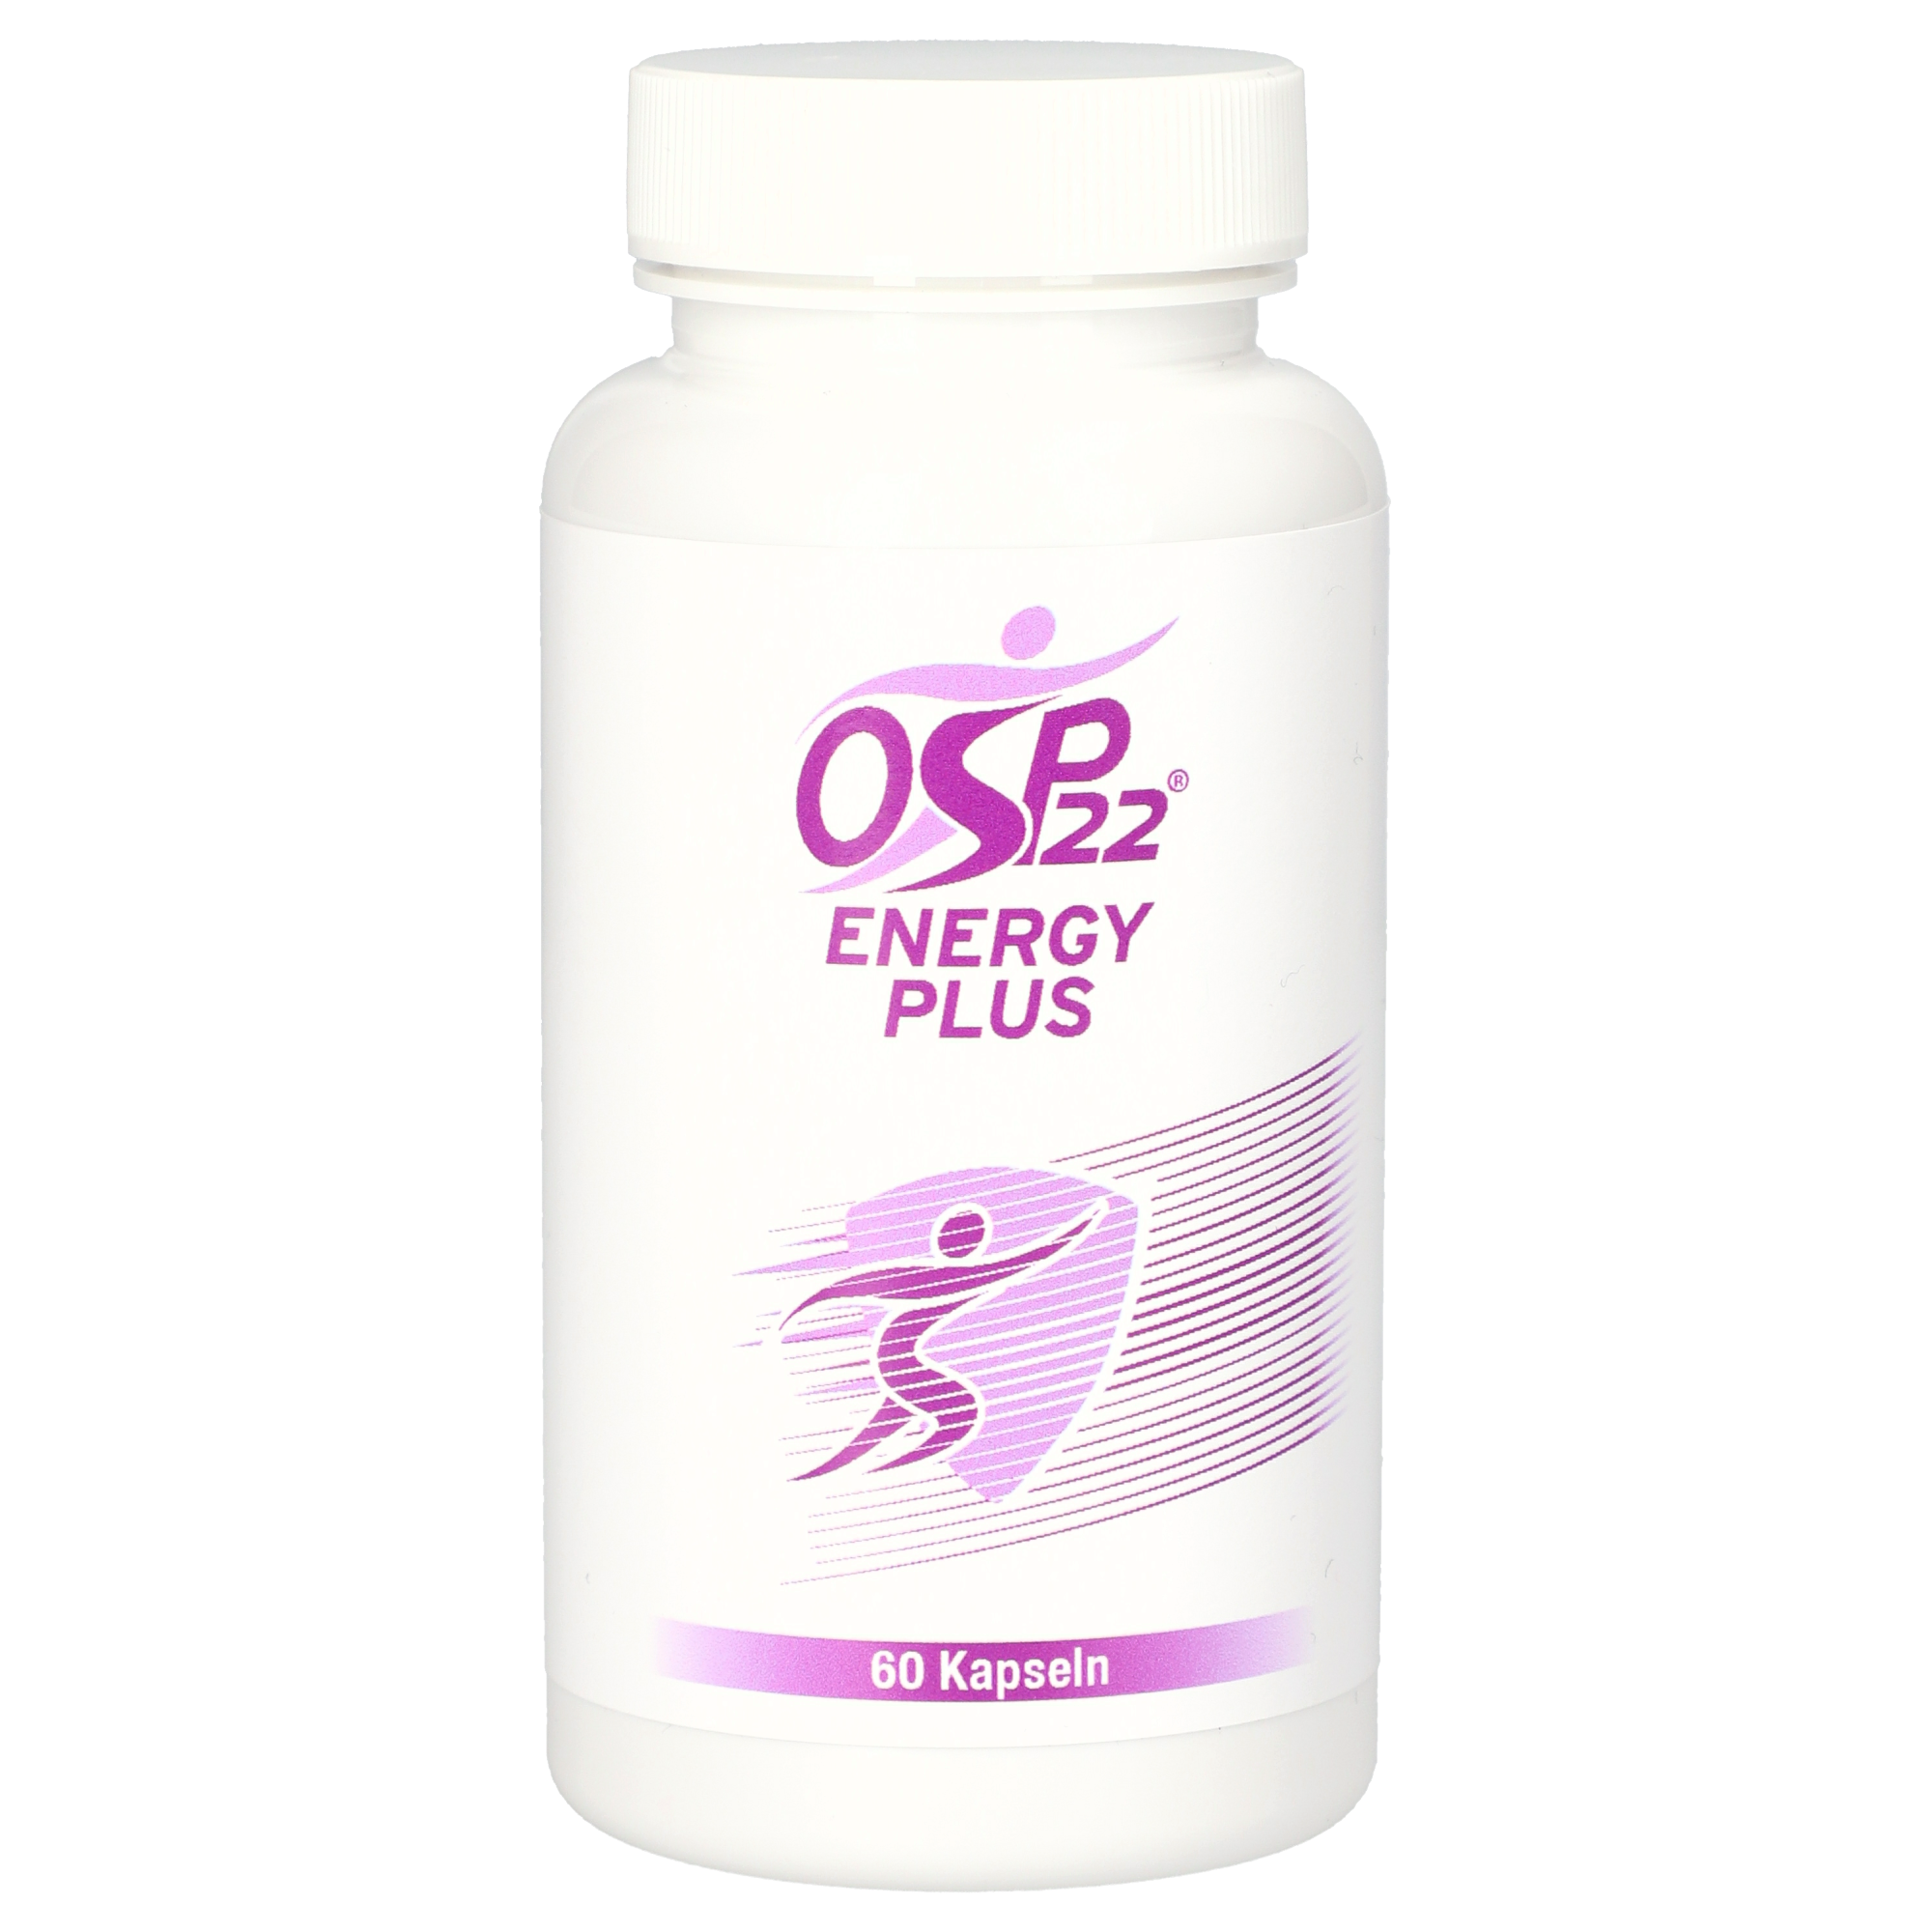 OSP22® Energy Plus Kapseln 60 Stück